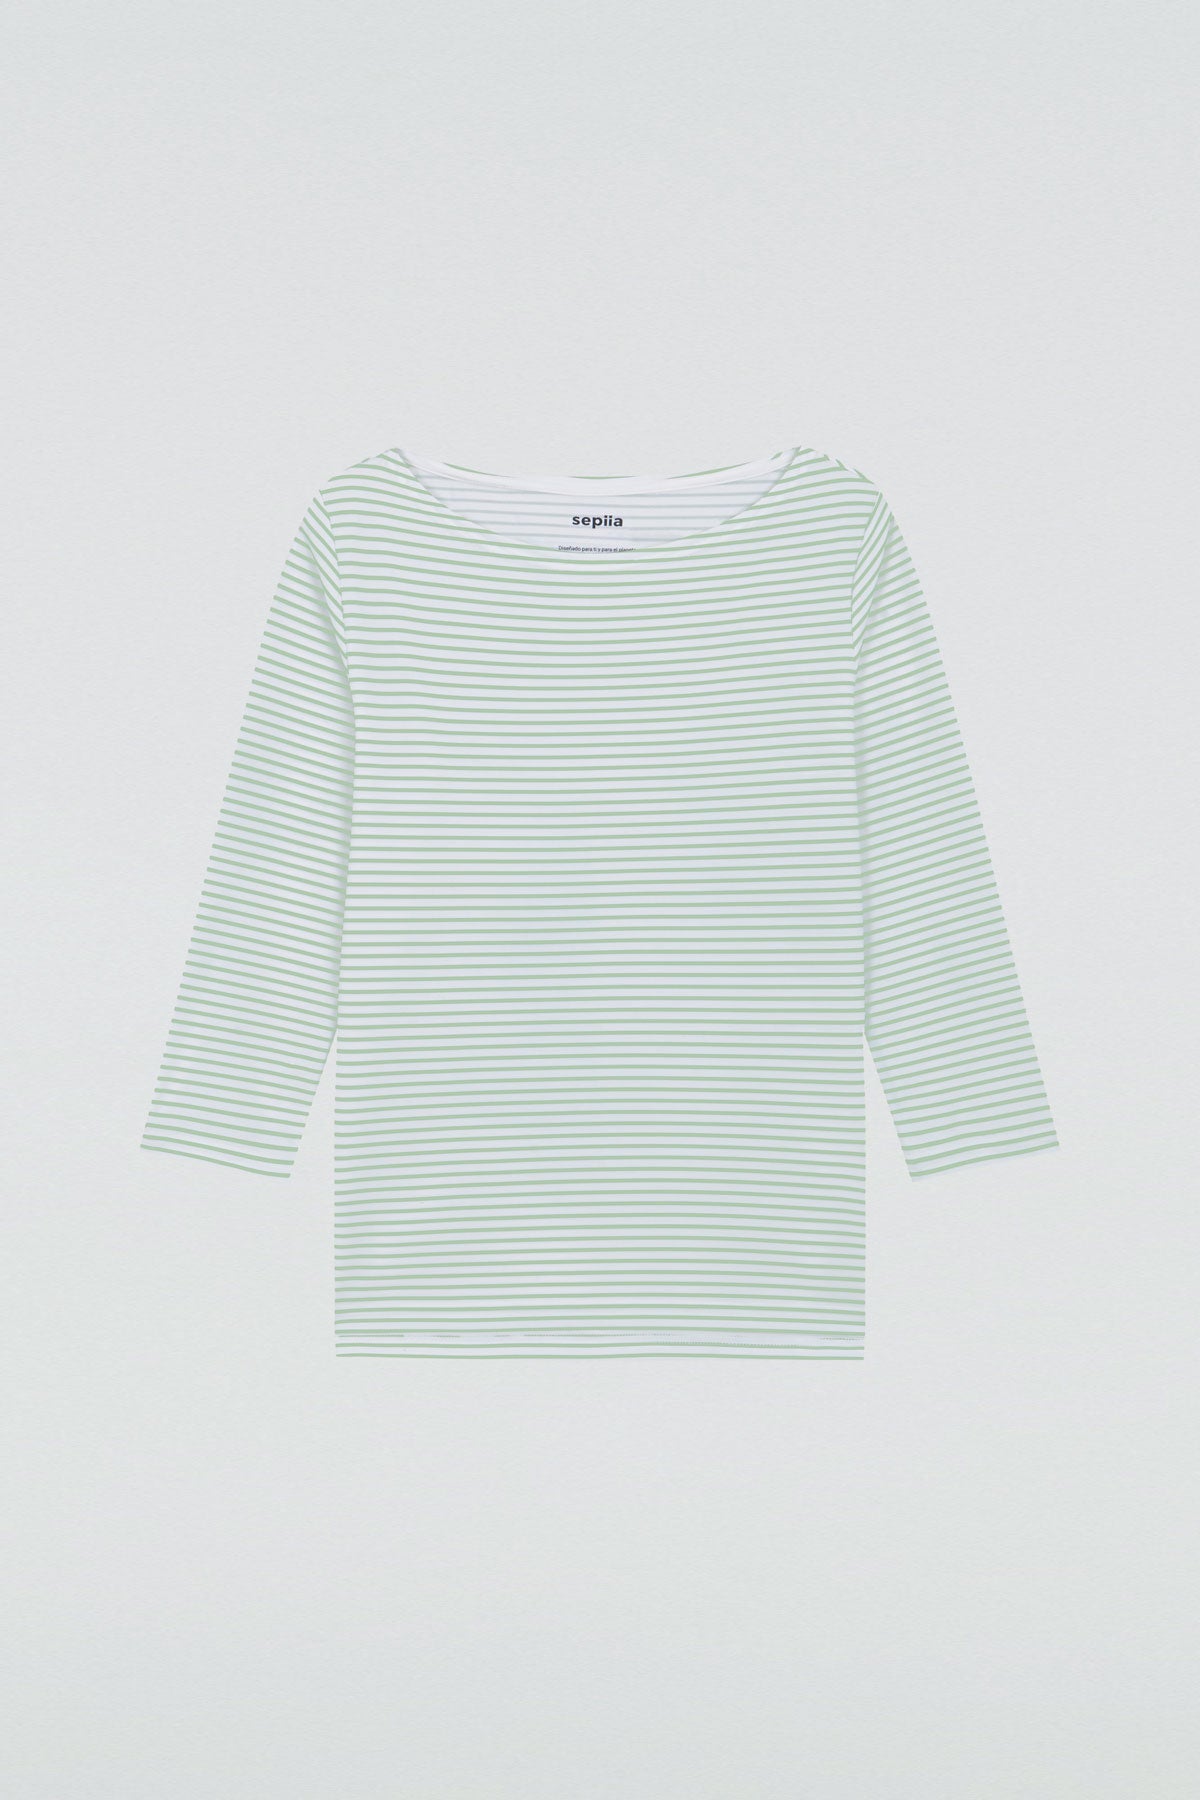 Camiseta para mujer con escote barco rayas verde Prenda básica perfecta para cualquier ocasión.Foto plano